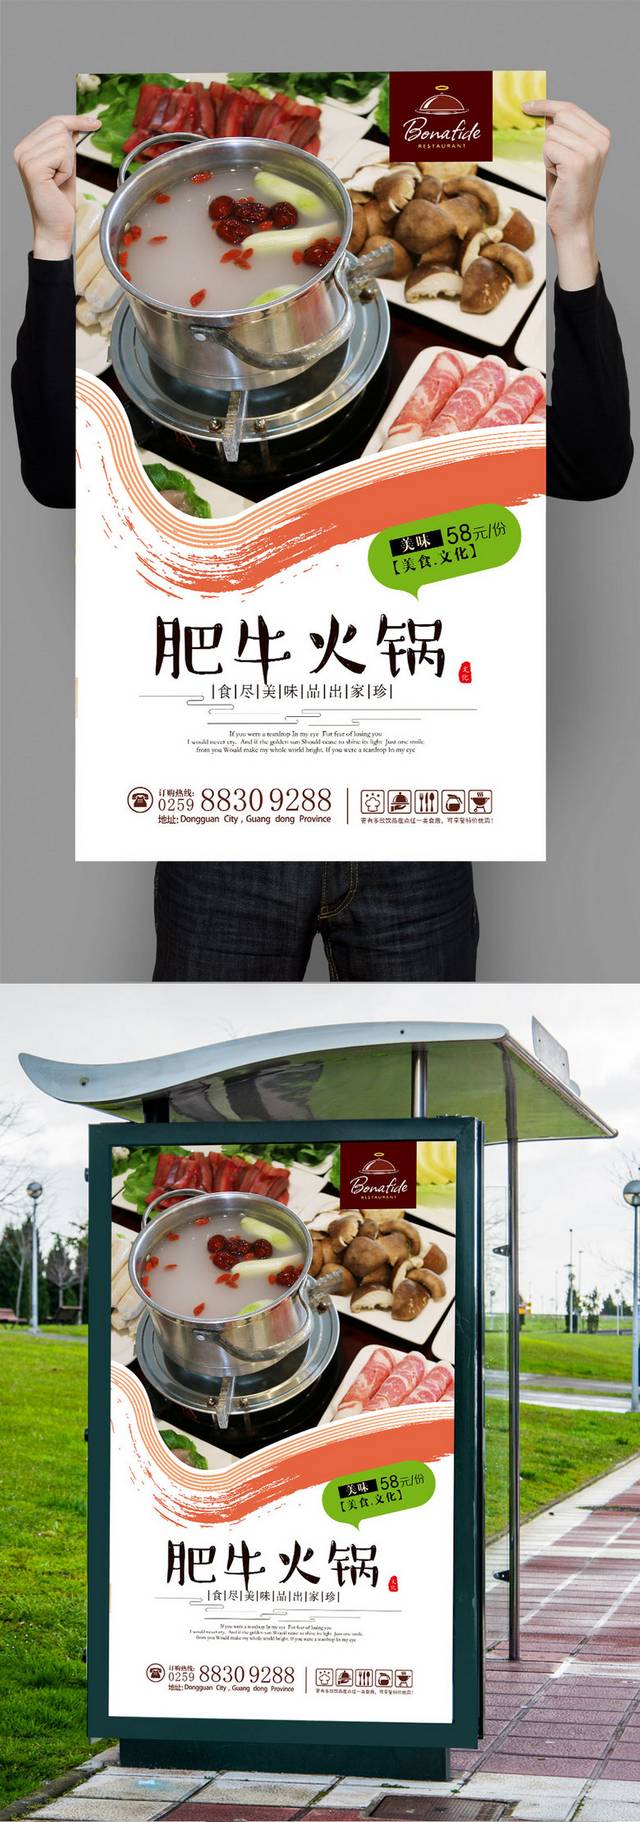 高清肥牛火锅宣传海报设计模板